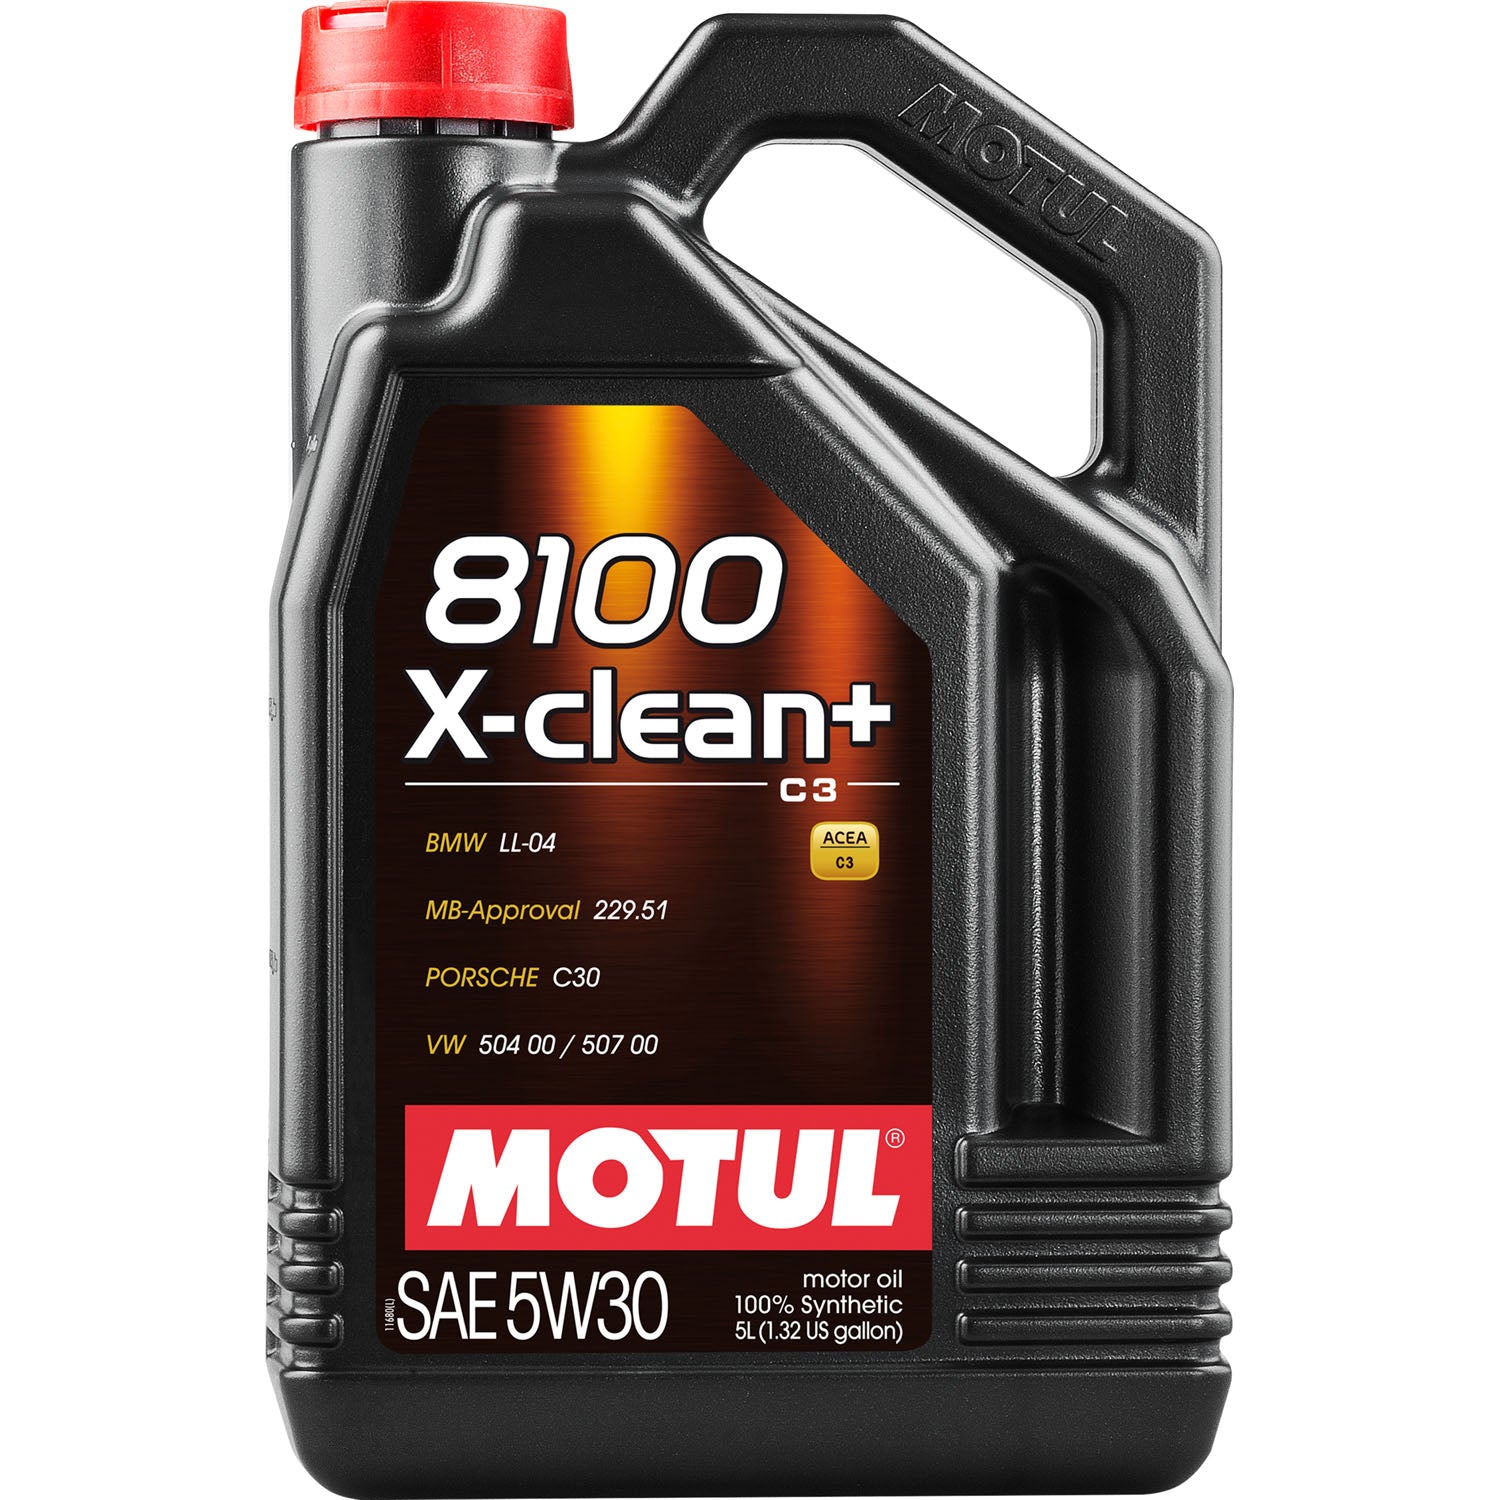 Motul 8100 X-Clean+ Synthetic Motor Oil 5W30 - 5 Liter